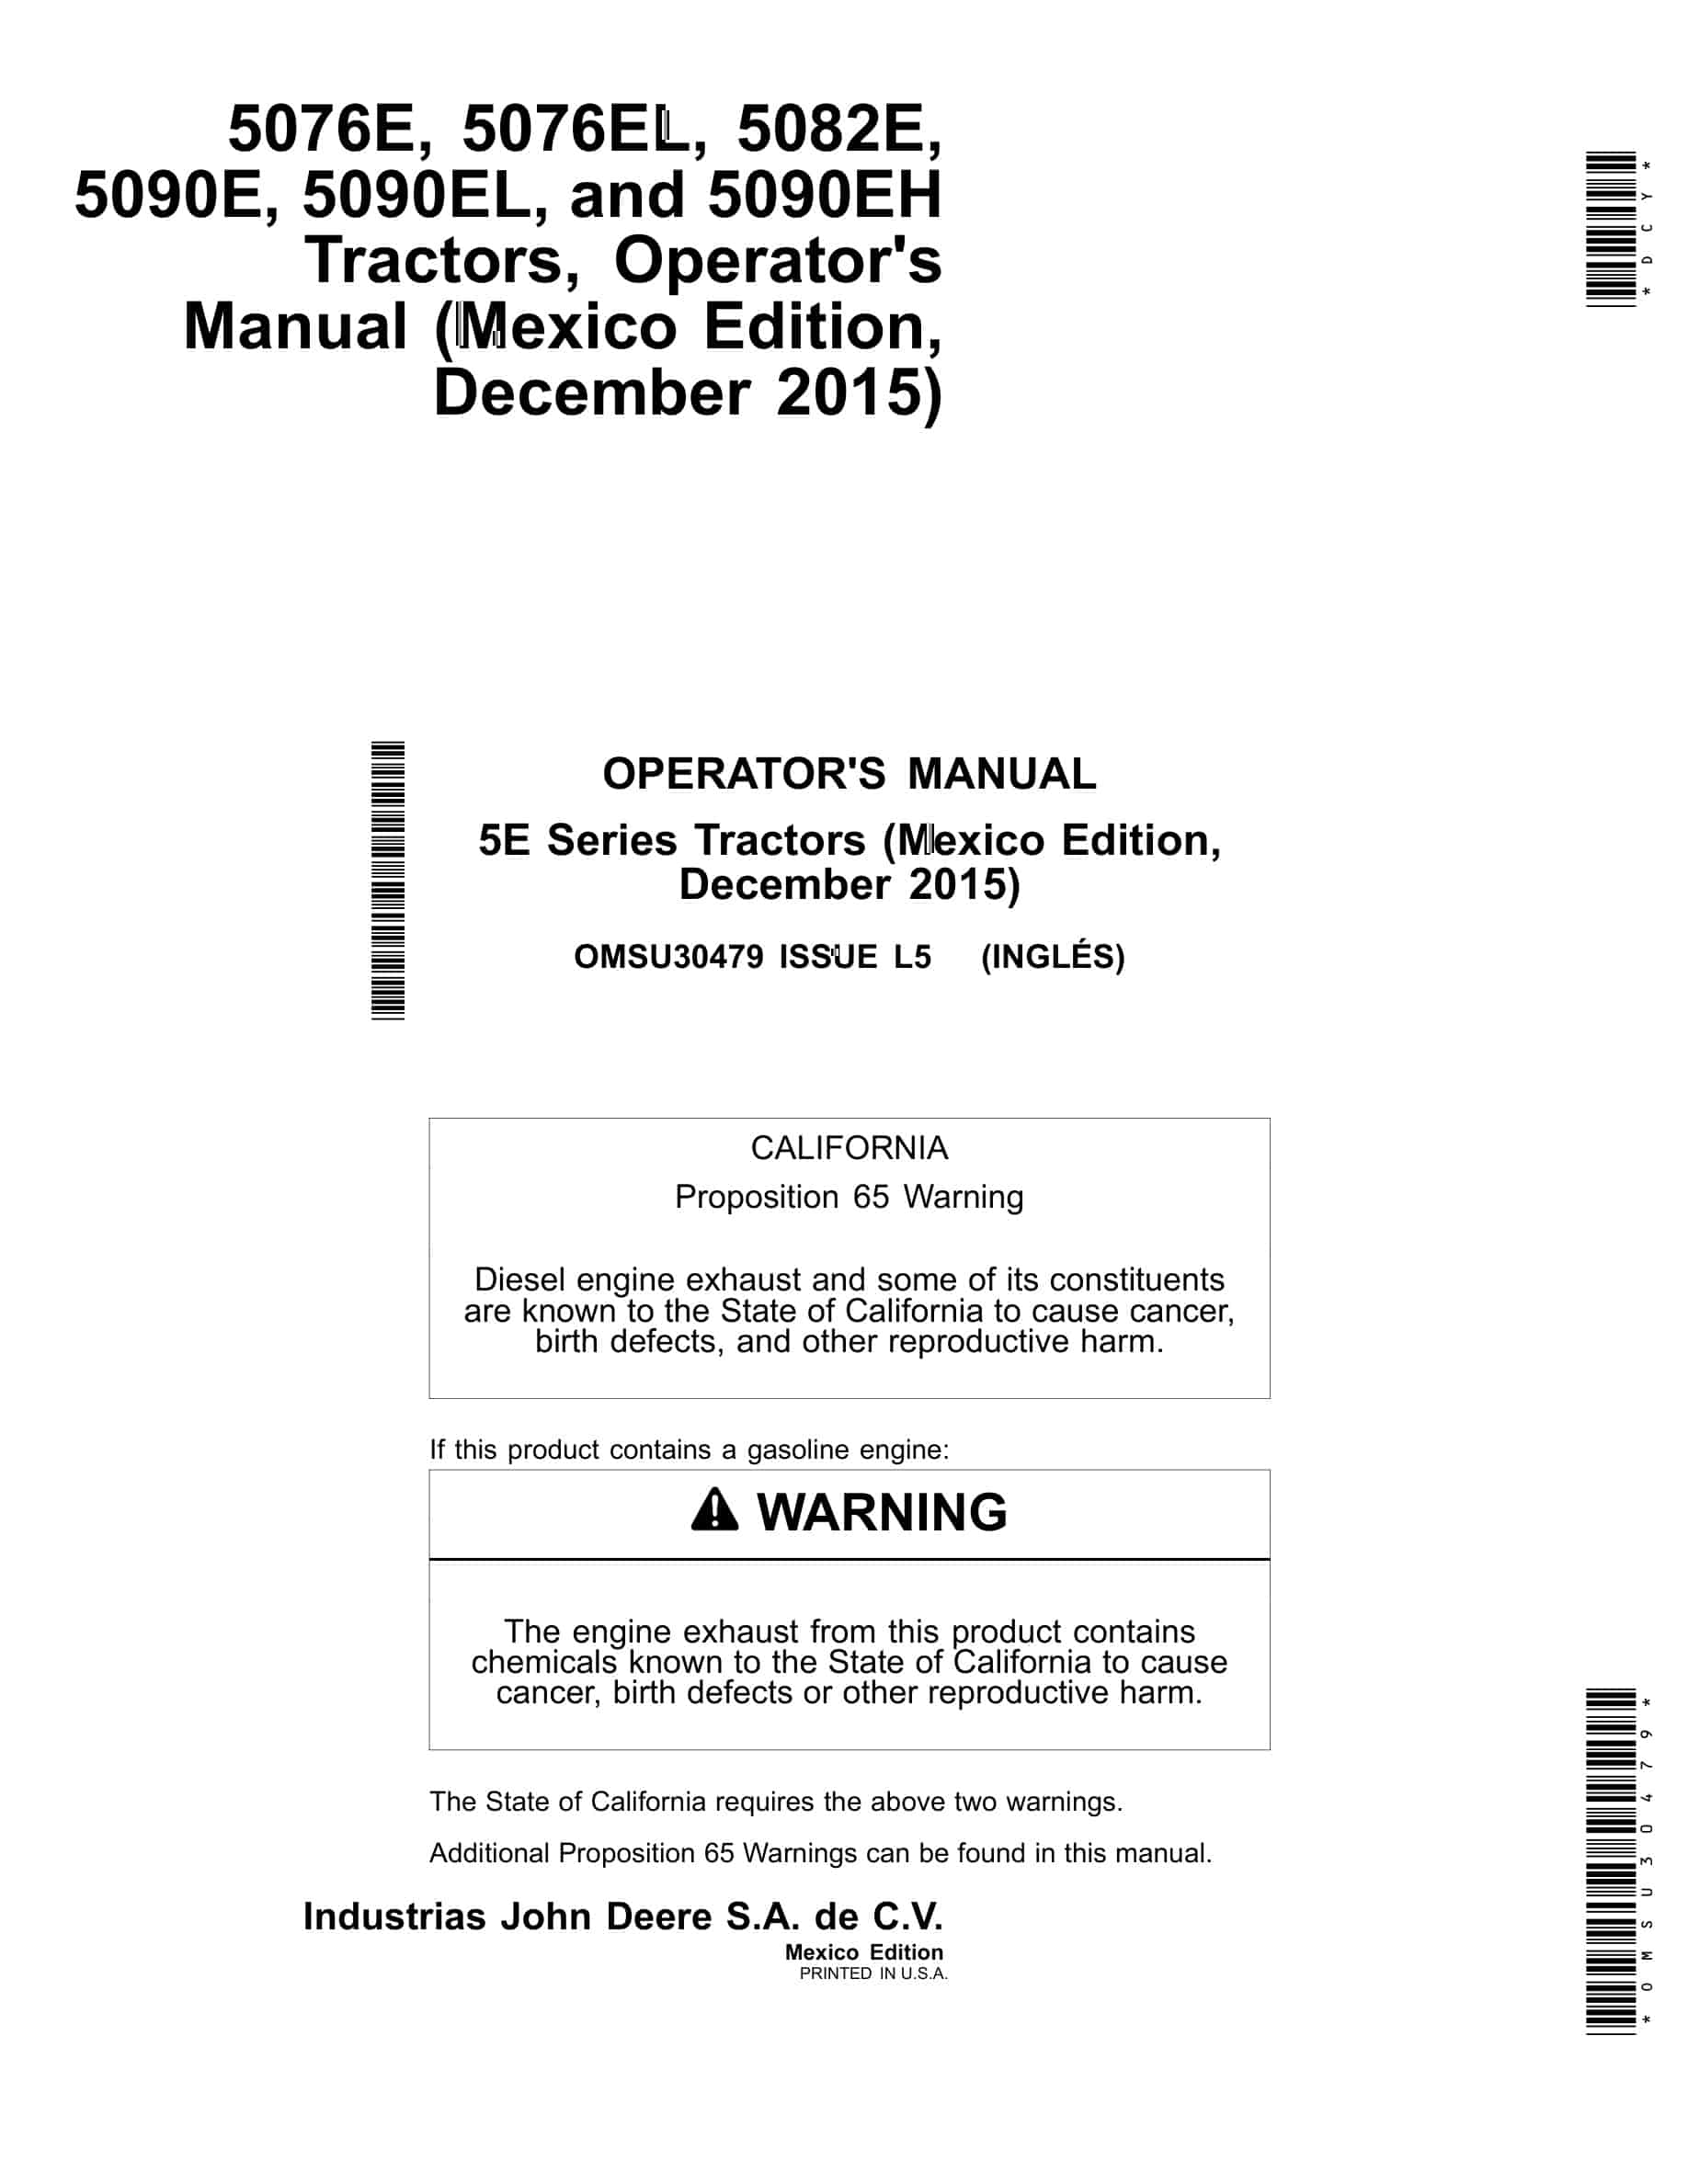 John Deere 5076e, 5076el, 5082e, 5090e, 5090el, And 5090eh Tractors Operator Manuals OMSU30479-1